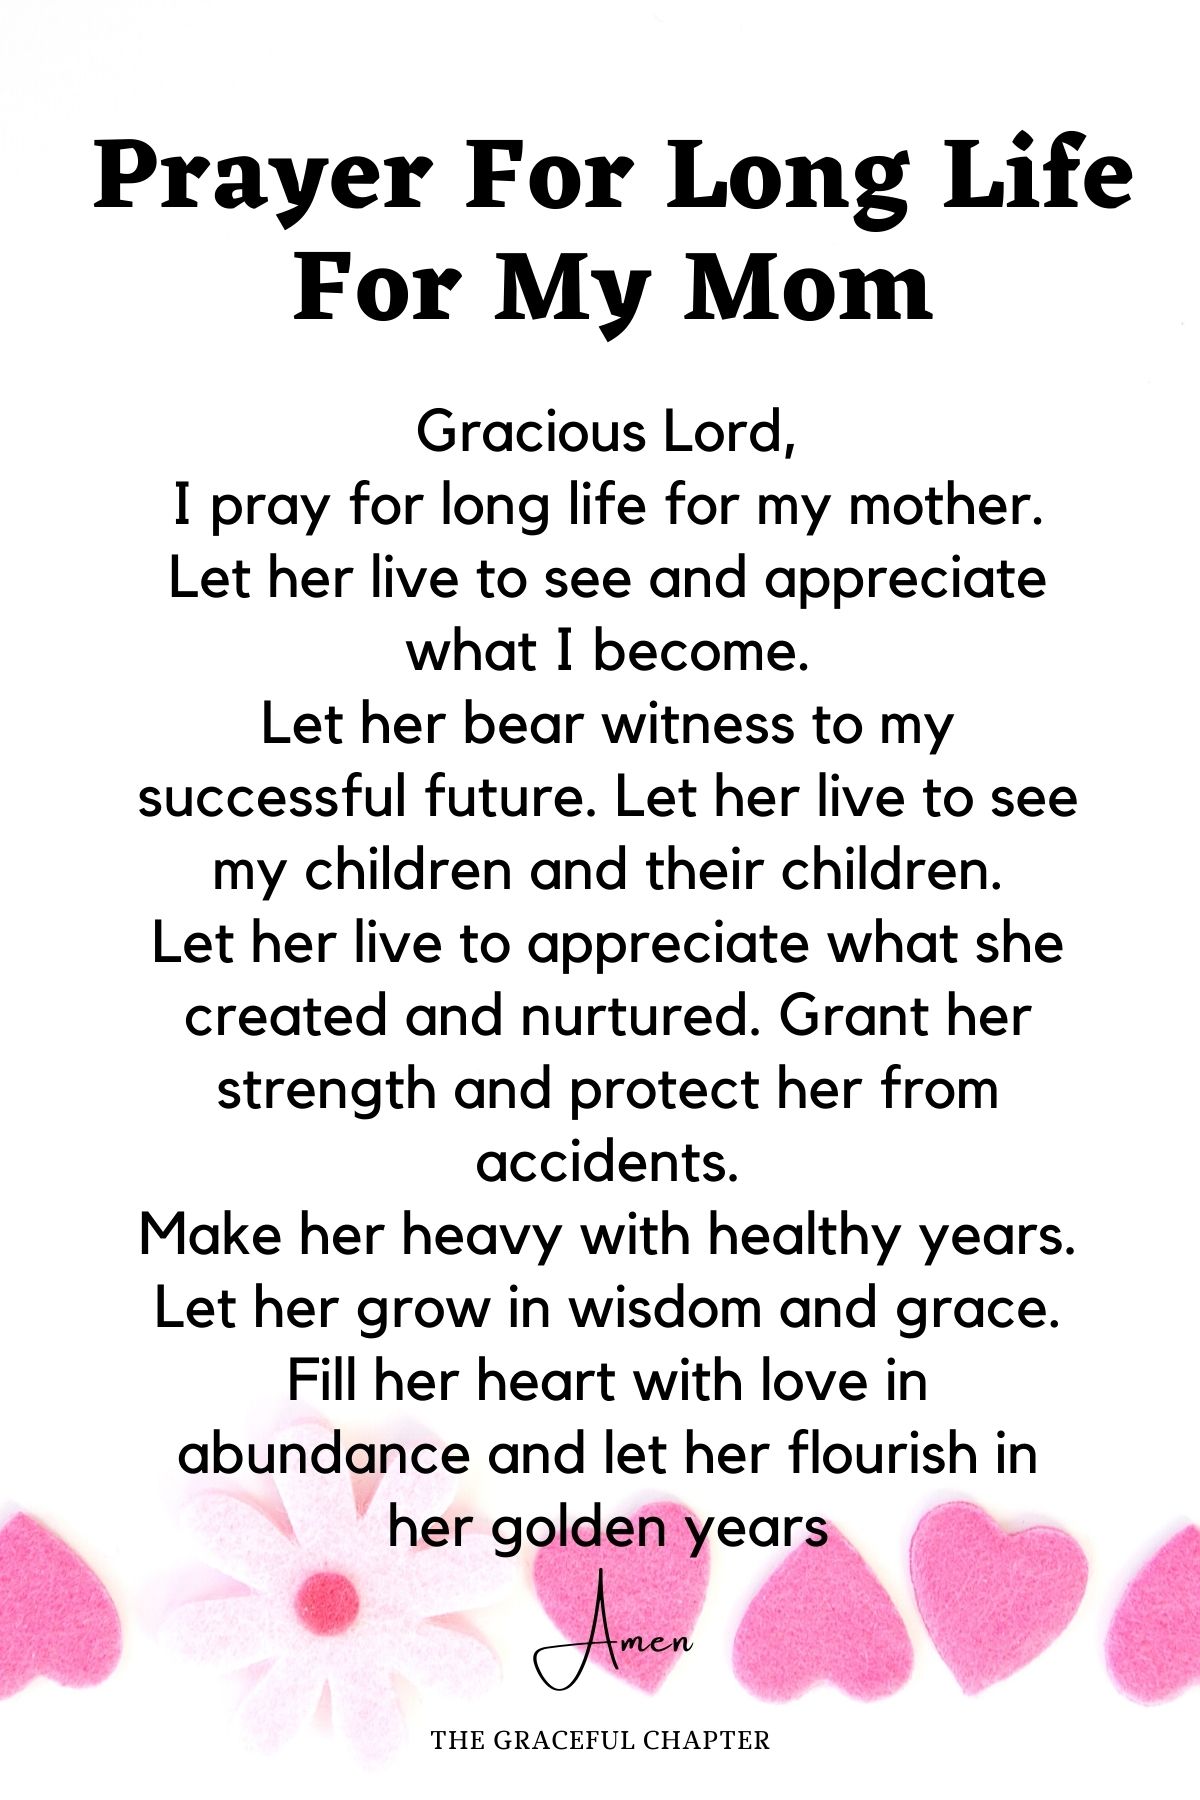 Prayer for long life for my mom